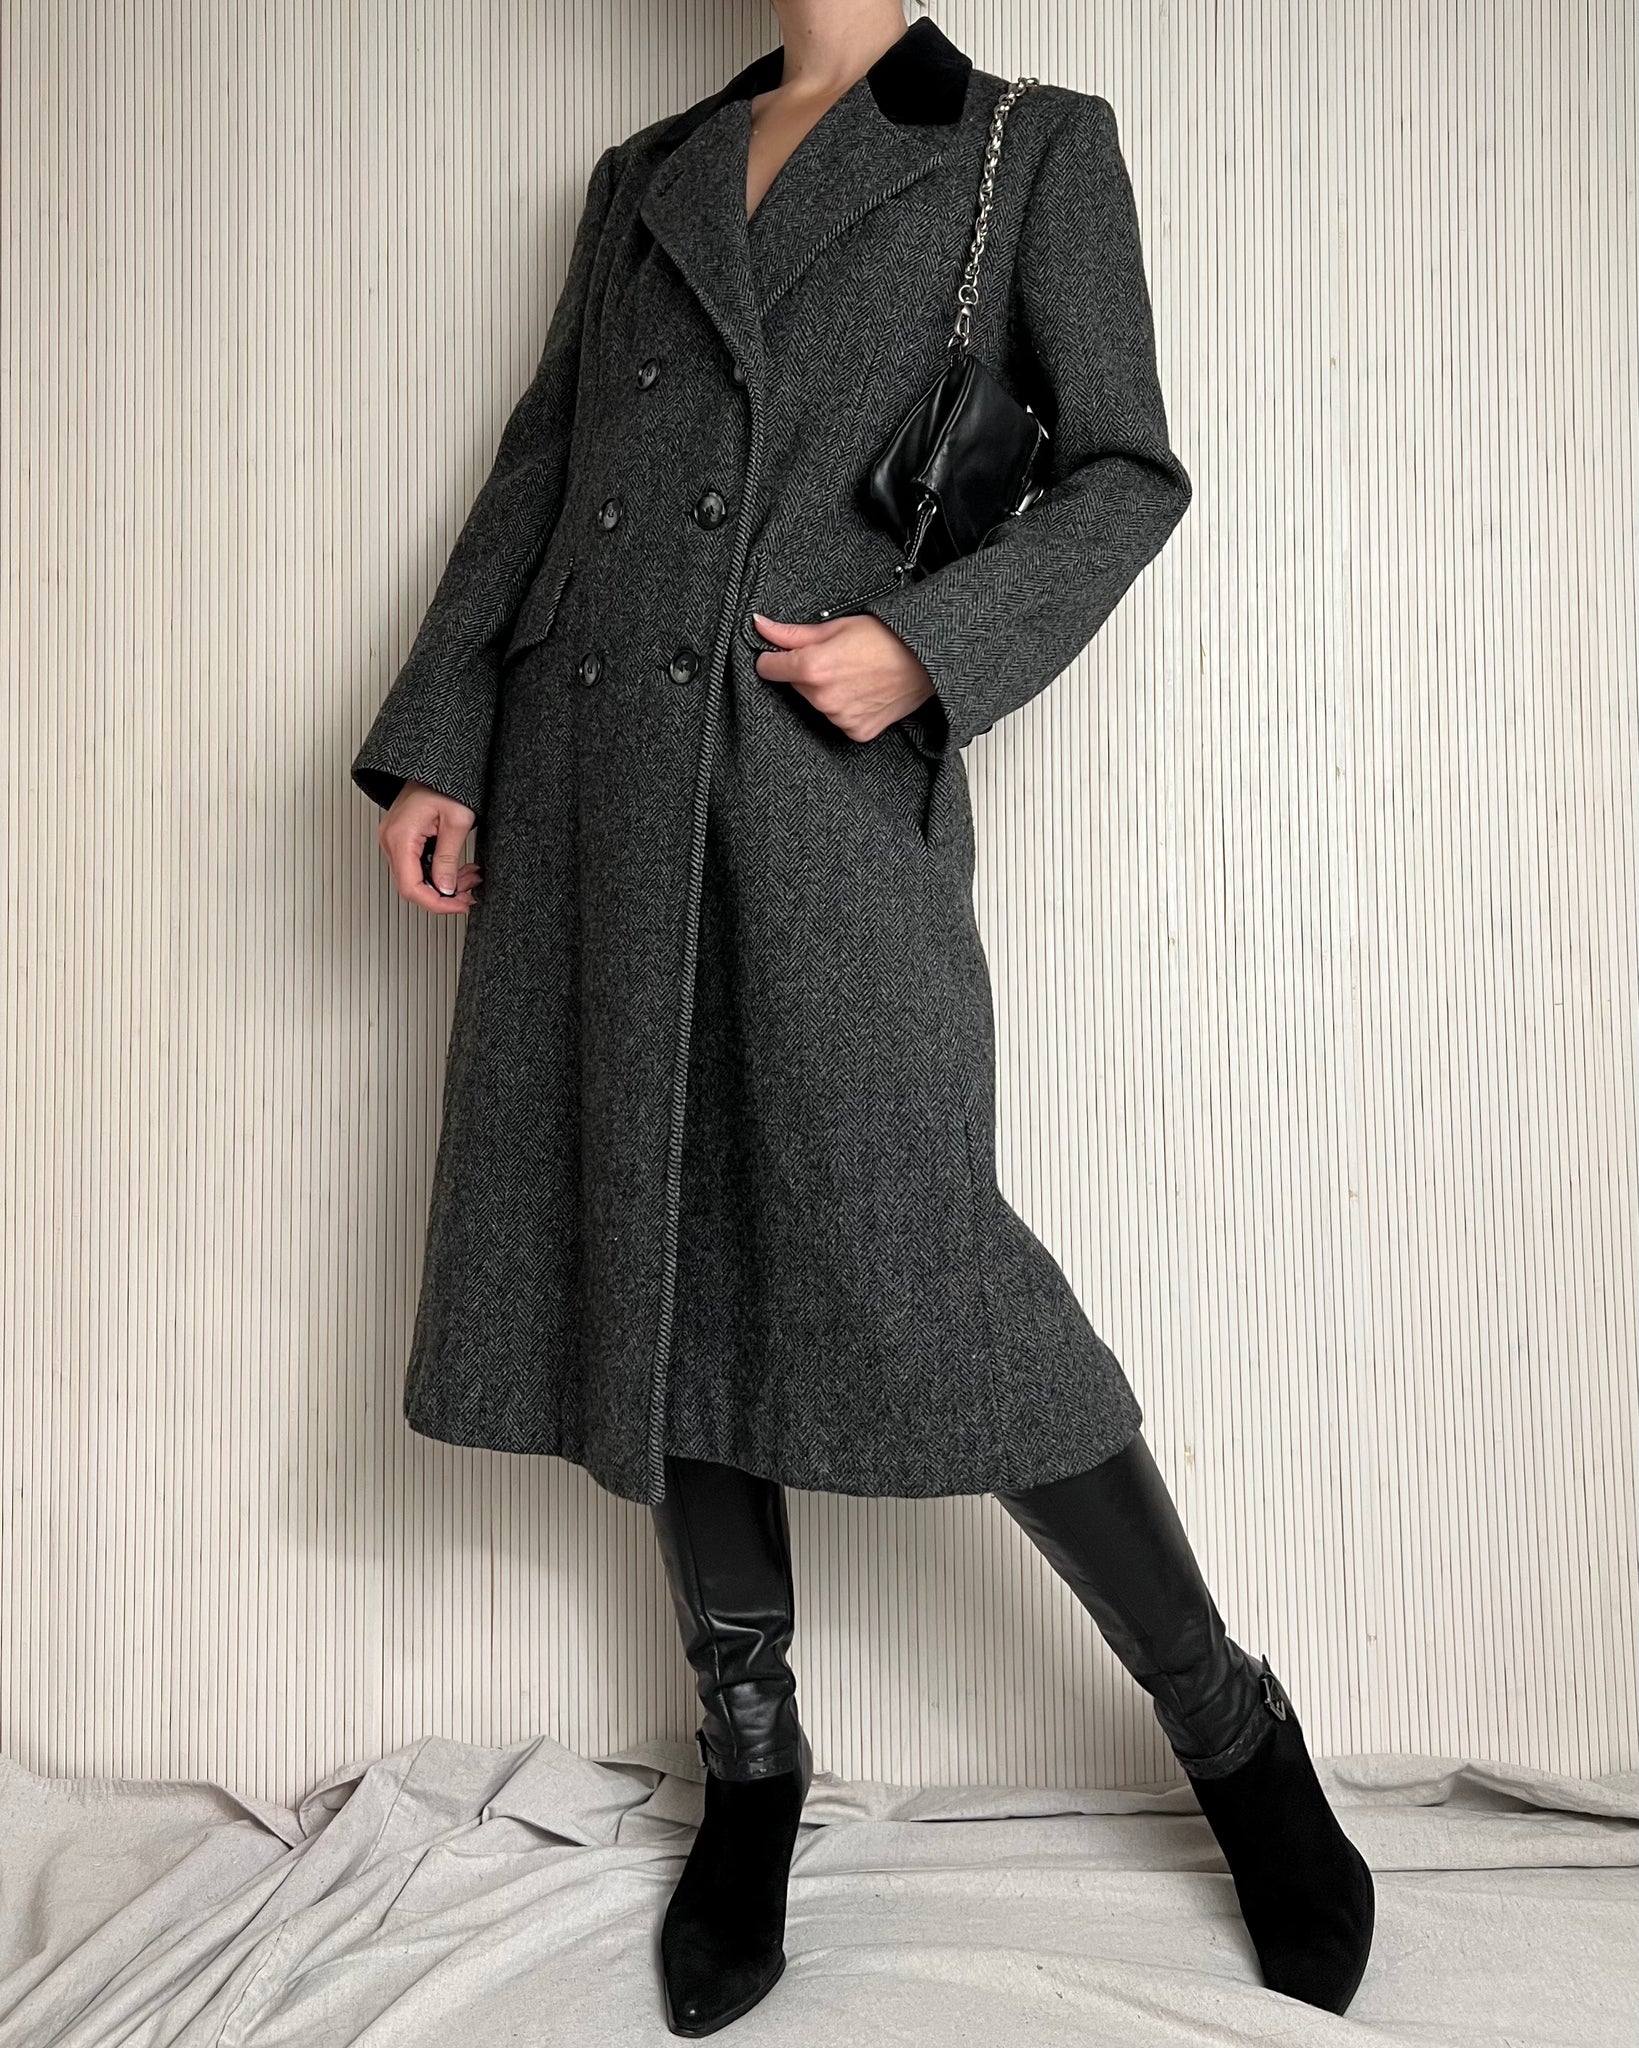 90's Herringbone Wool Coat (Fits S/M)